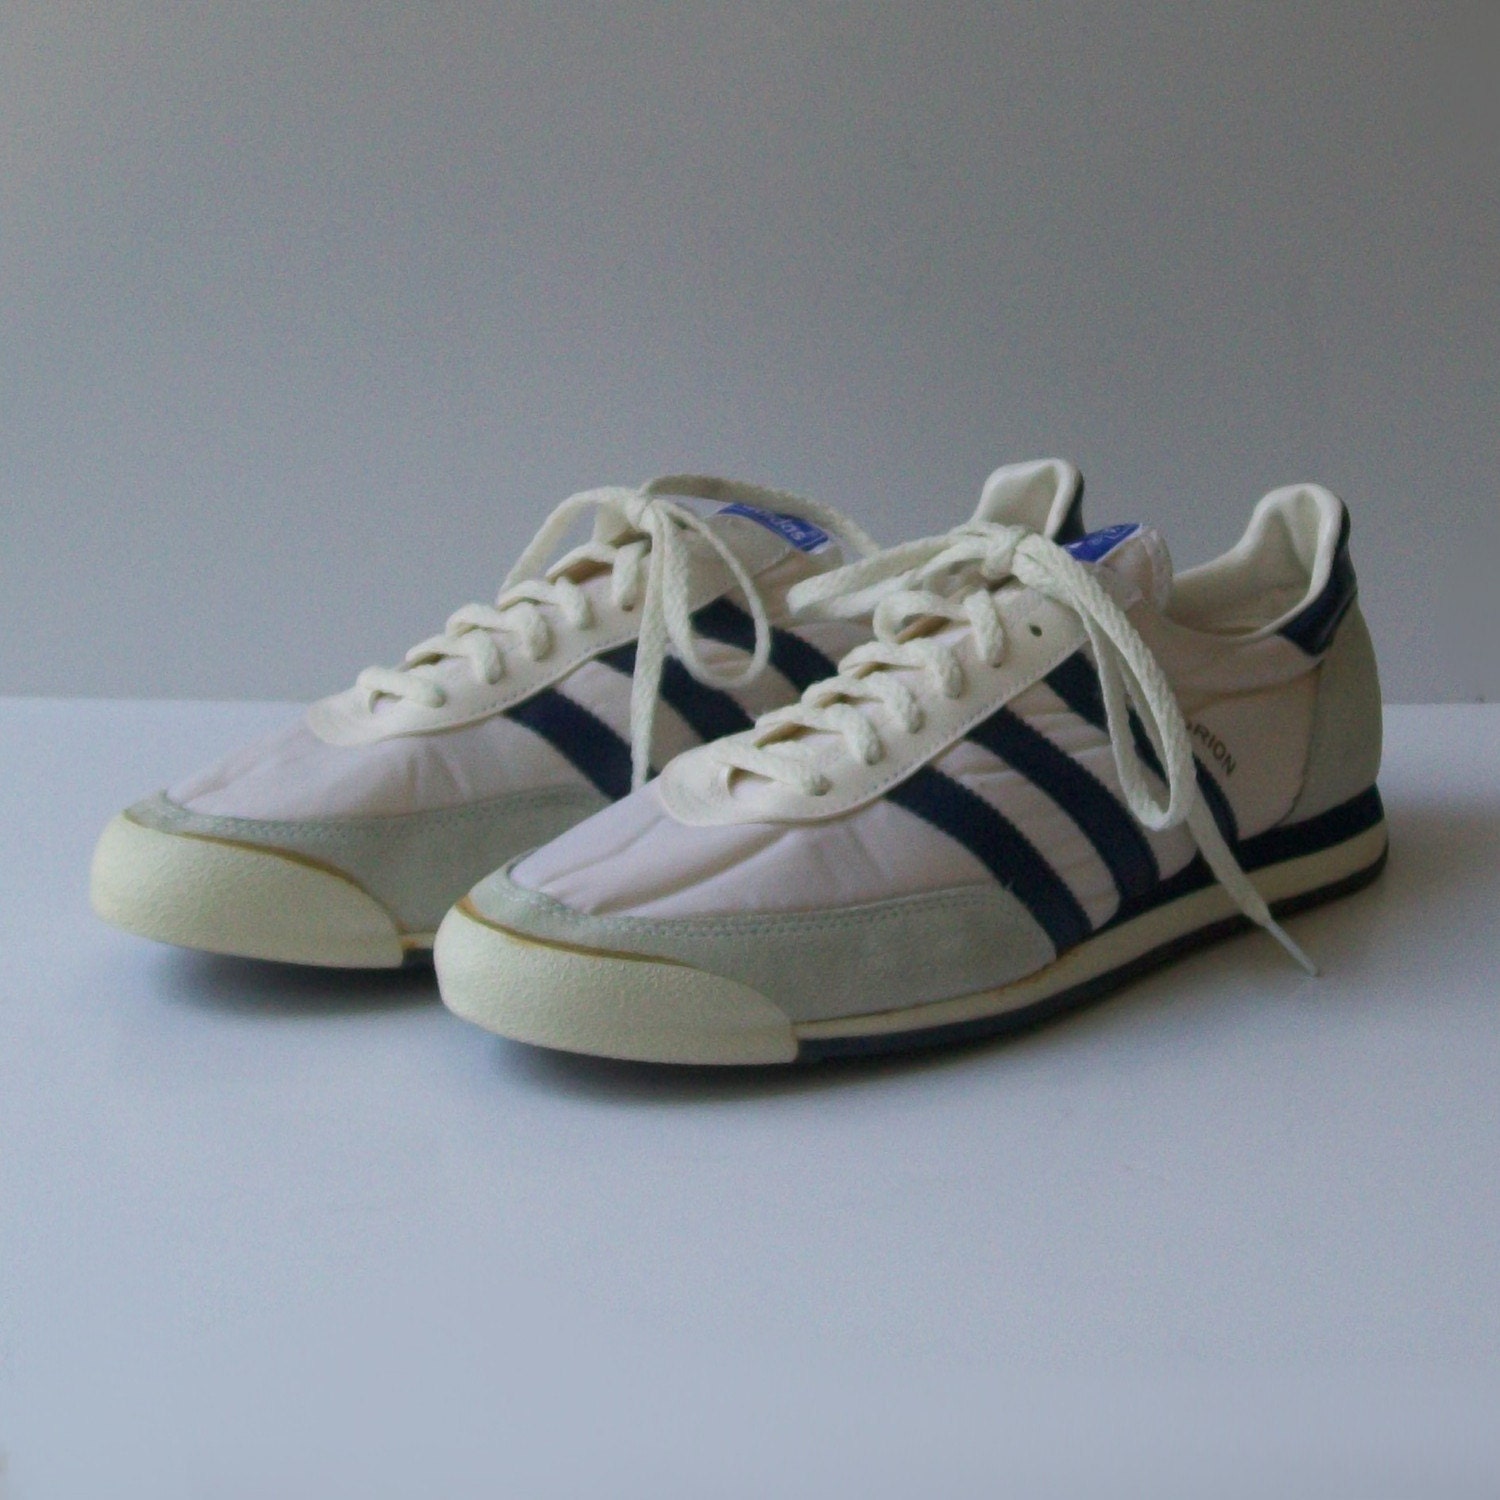 Vintage Men's ADIDAS ORION Tennis Shoes Size 14